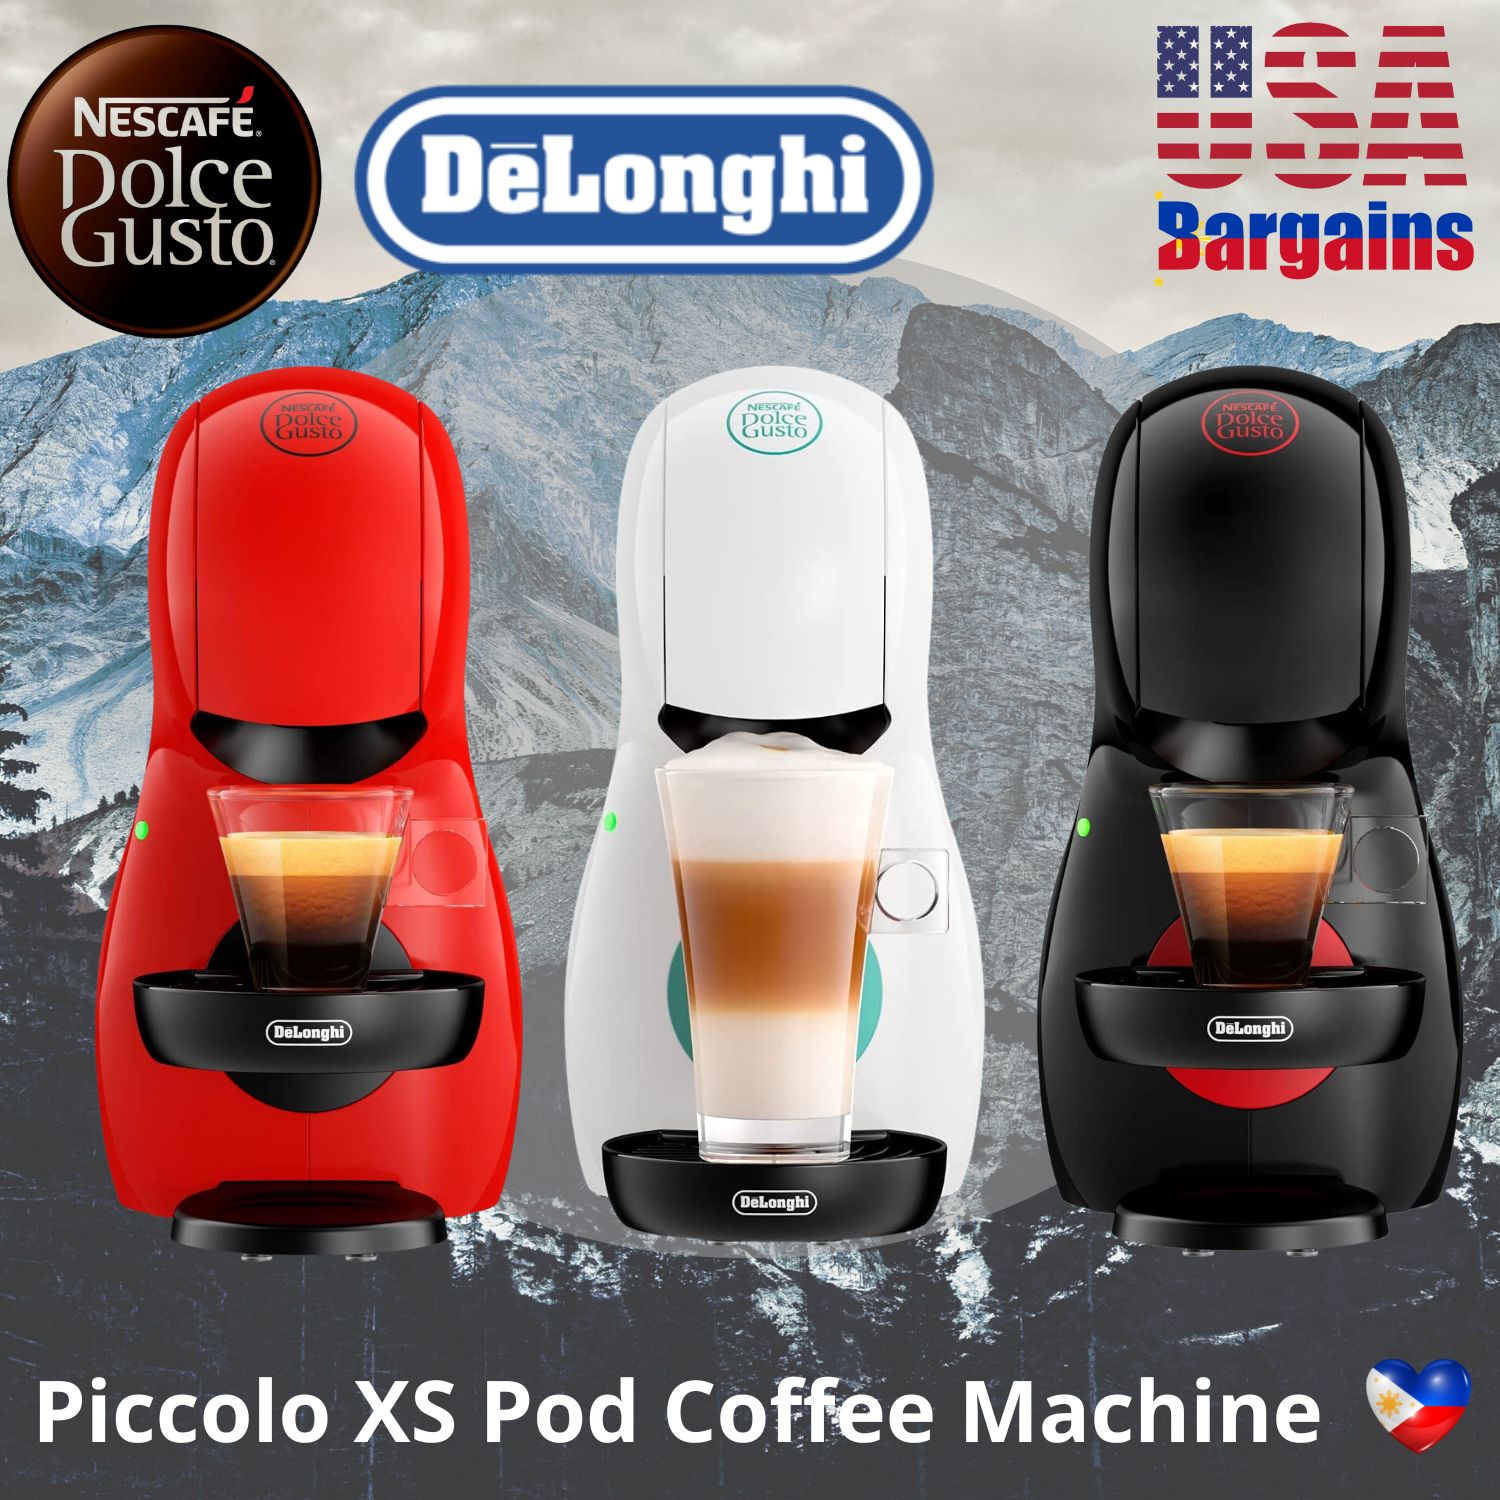 DeLonghi Dolce Gusto Piccolo XS Coffee Machine, Espresso/Cappuccino